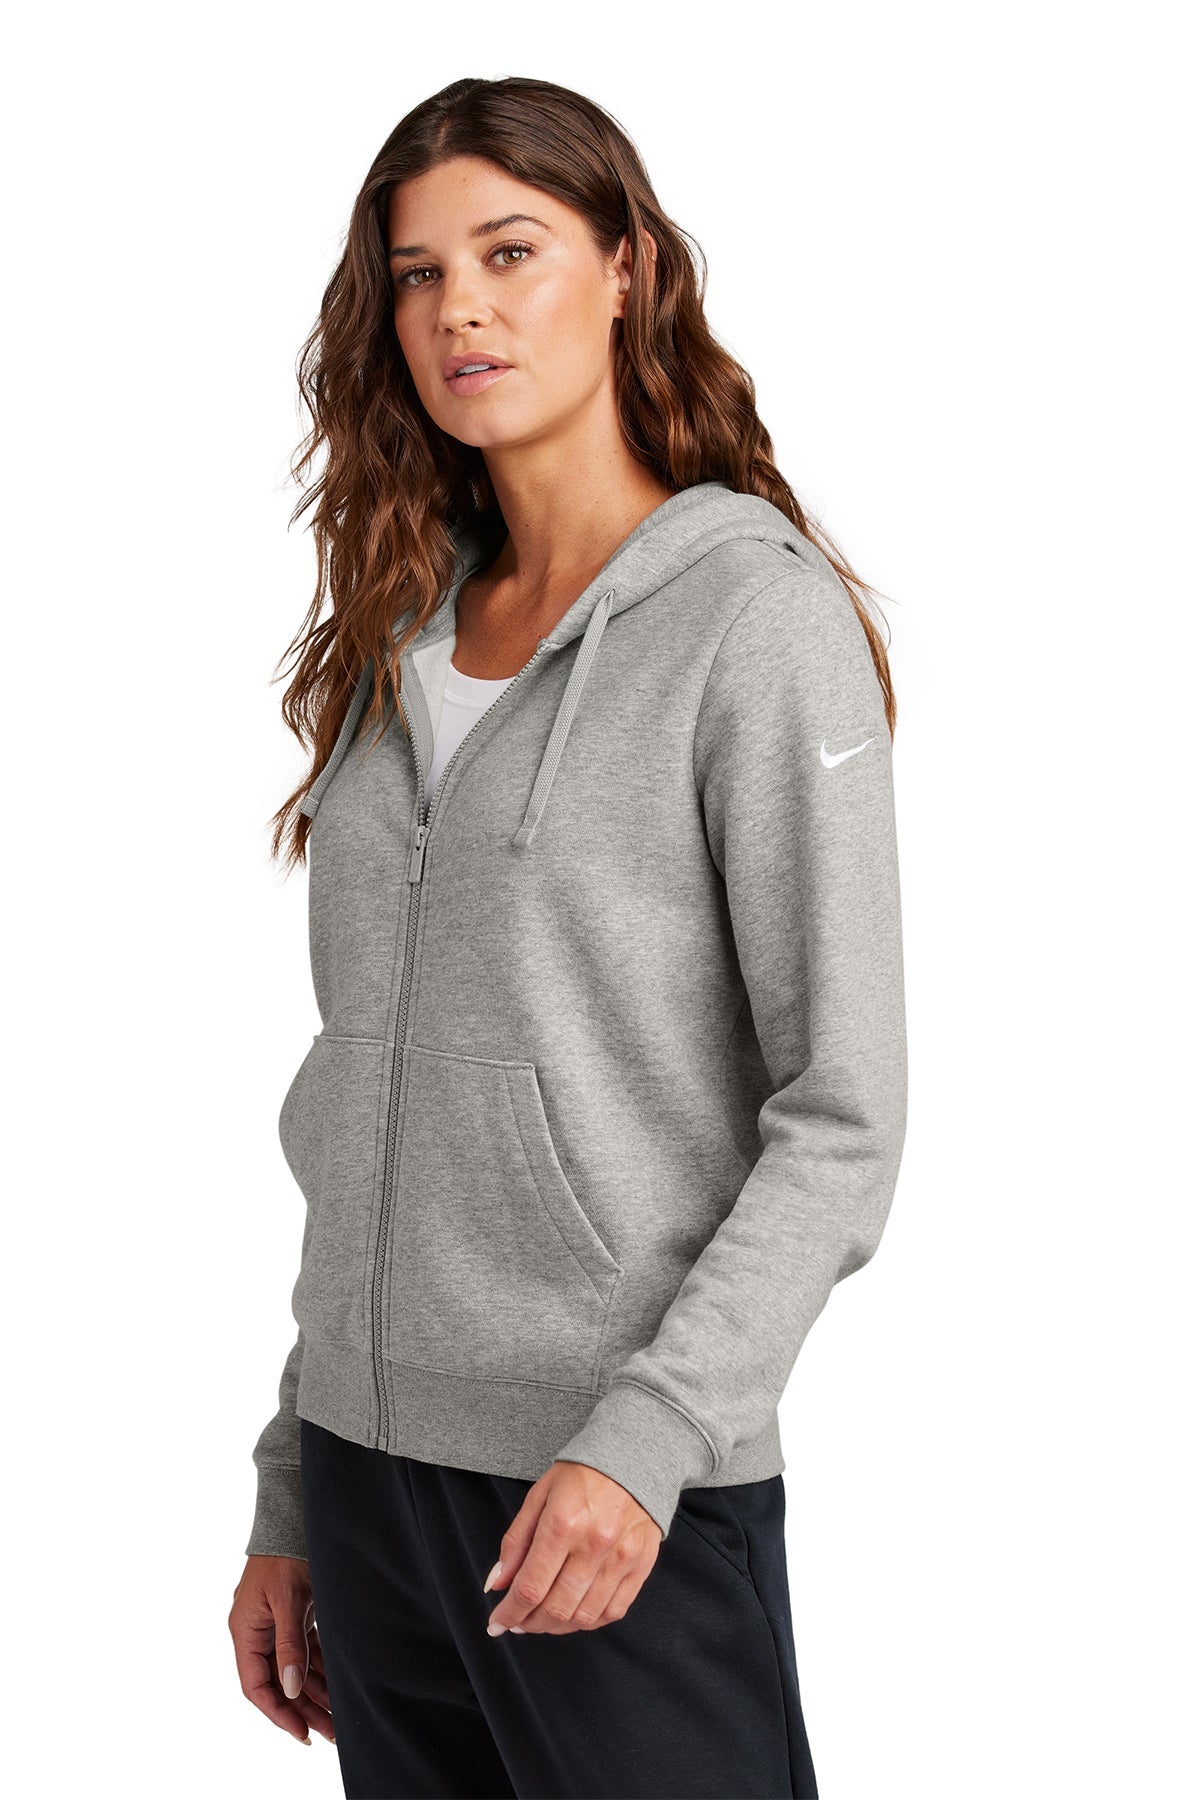 Nike Ladies Club Fleece Full-Zip Custom Hoodies, Dark Grey Heather